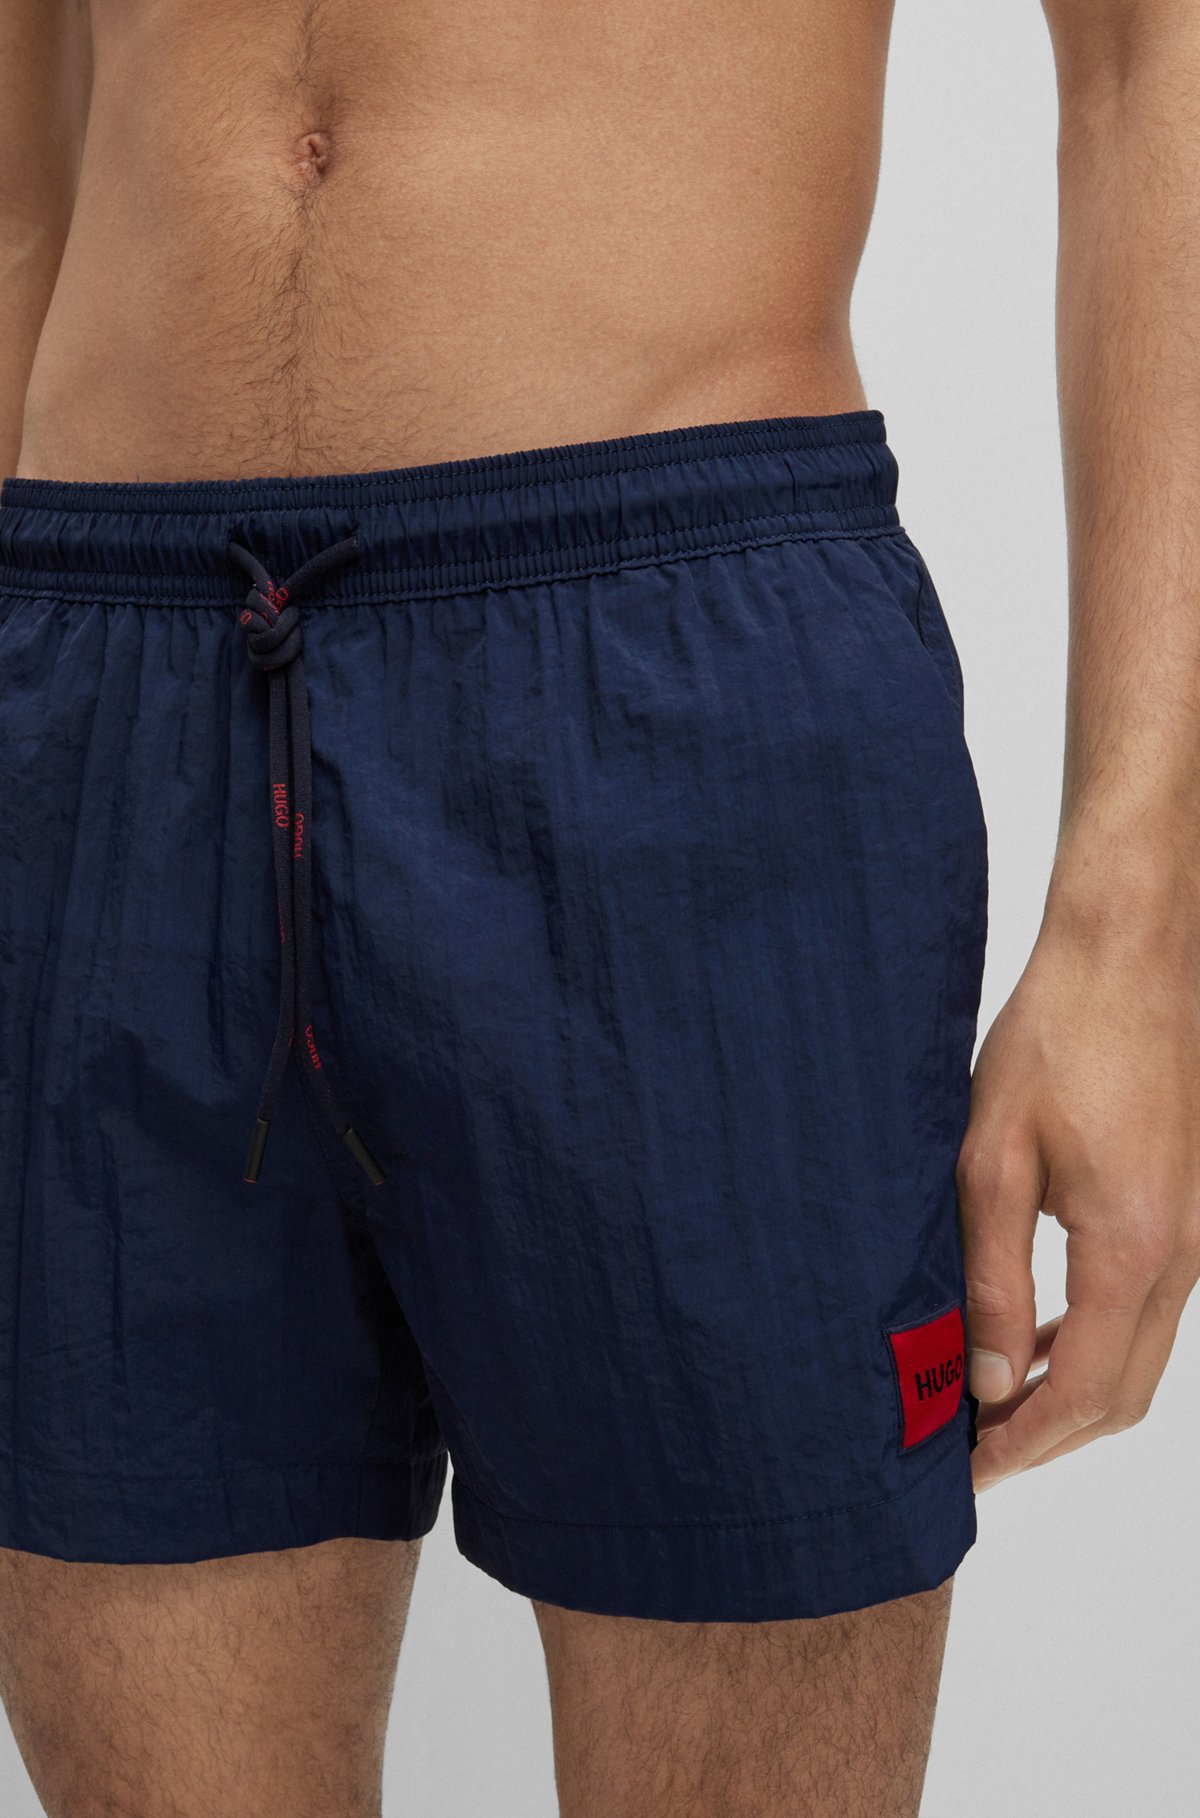 Bañador tipo shorts de secado rápido con etiqueta con logo roja, Azul oscuro